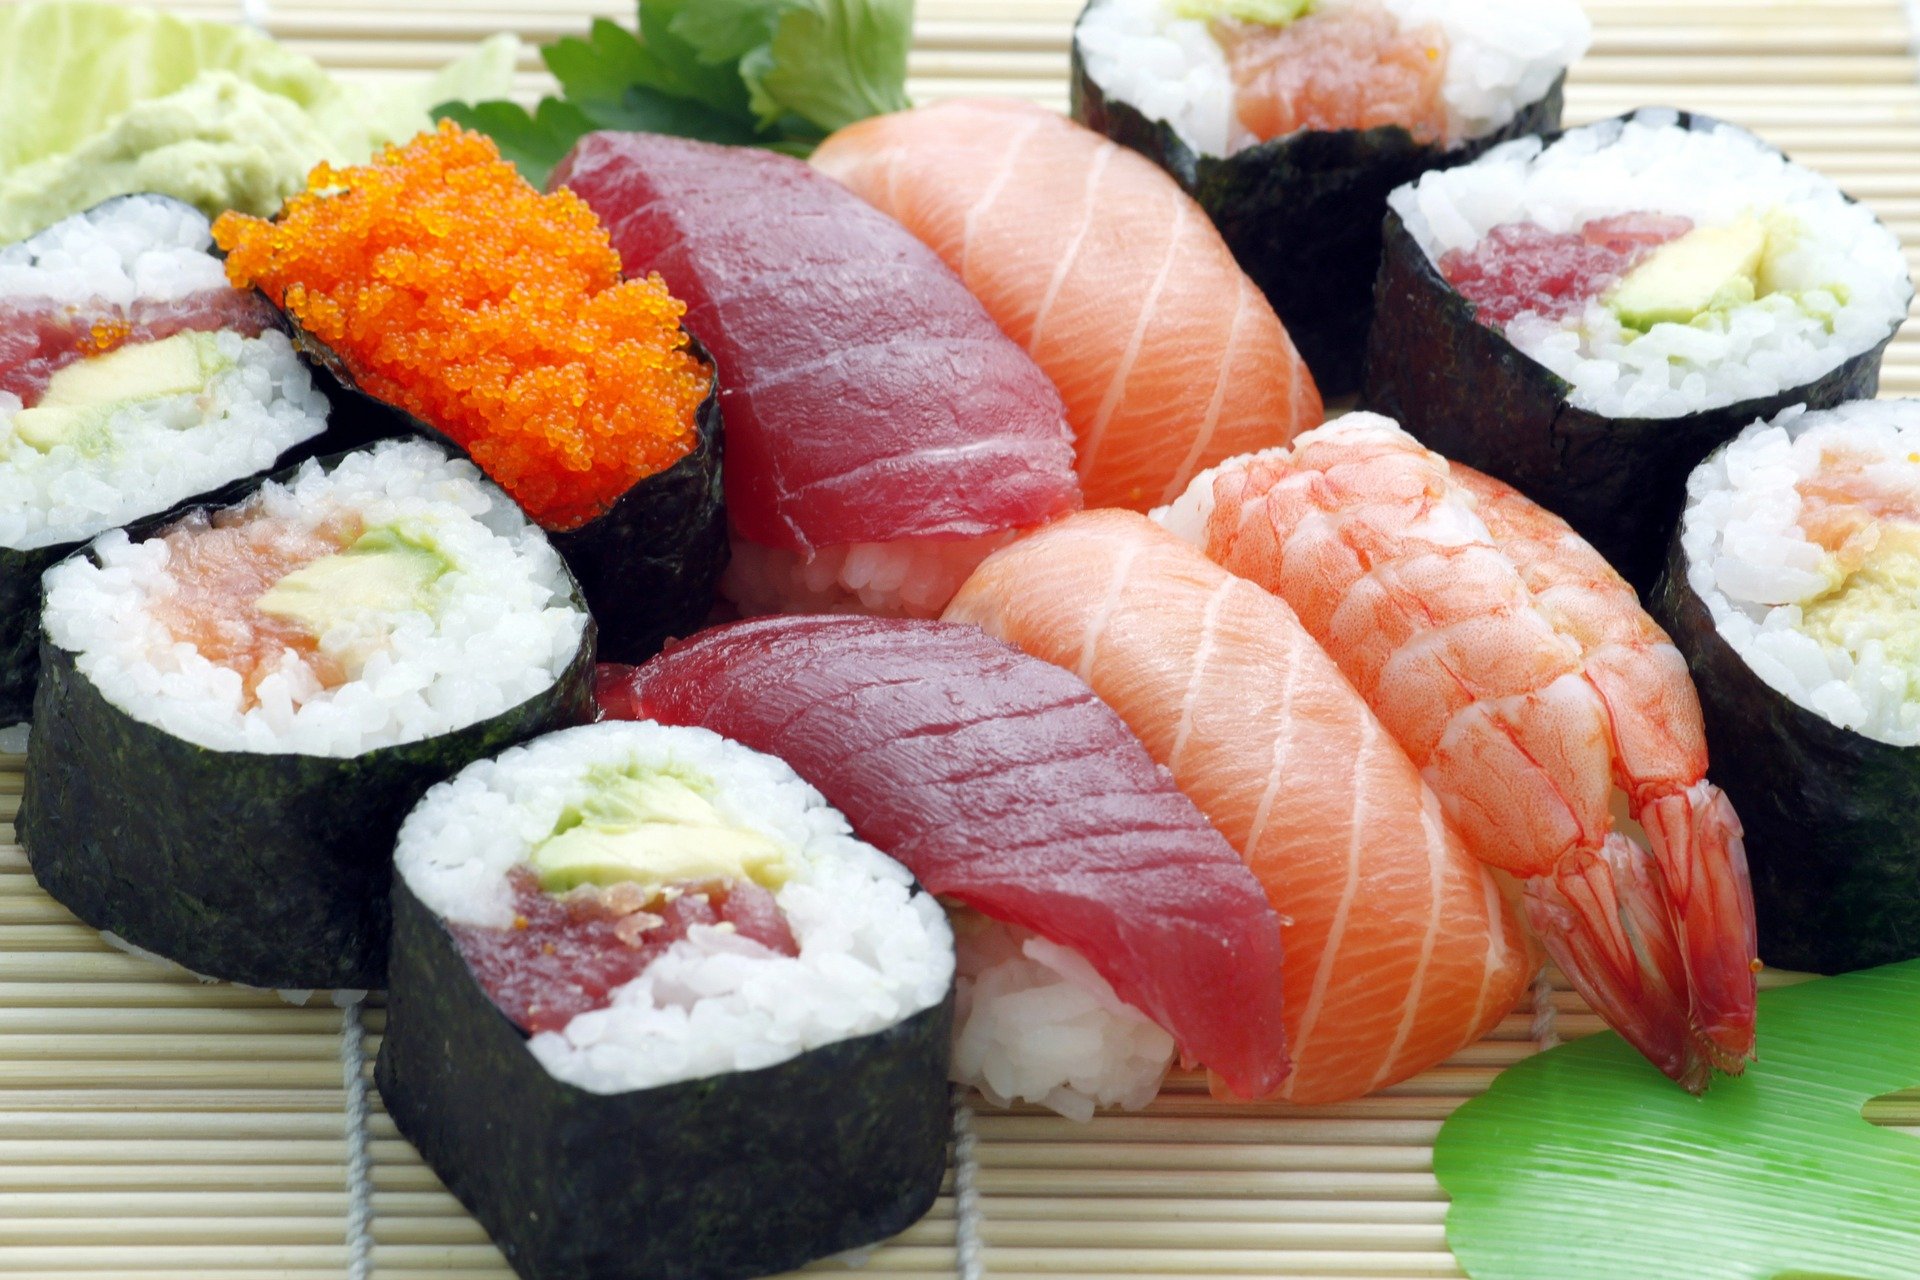 És perjudicial el mercuri que ingerim quan mengem peix?